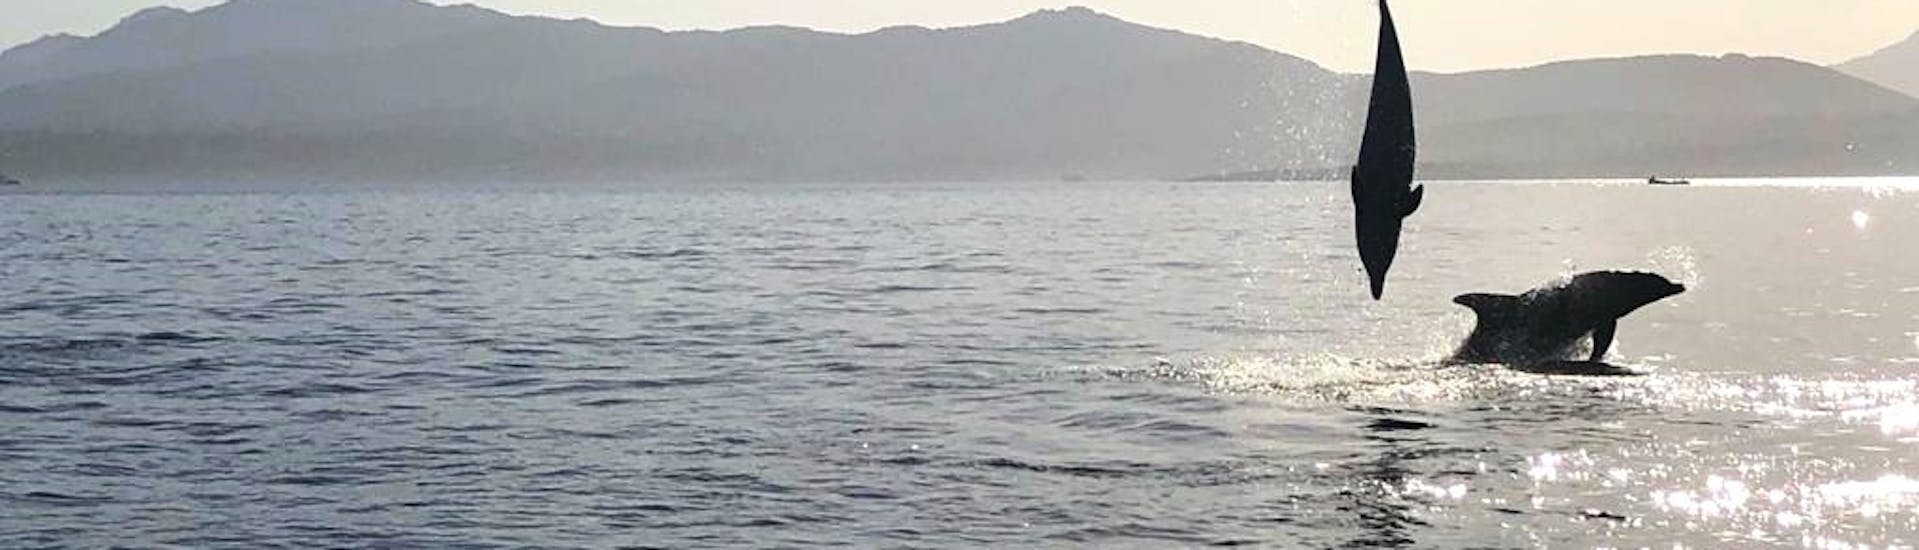 Quelques dauphins sautent dans l'eau pendant l'excursion en bateau semi-rigide à Golfo Aranci avec observation des dauphins et snorkeling avec DST Sardegna Golfo Aranci.